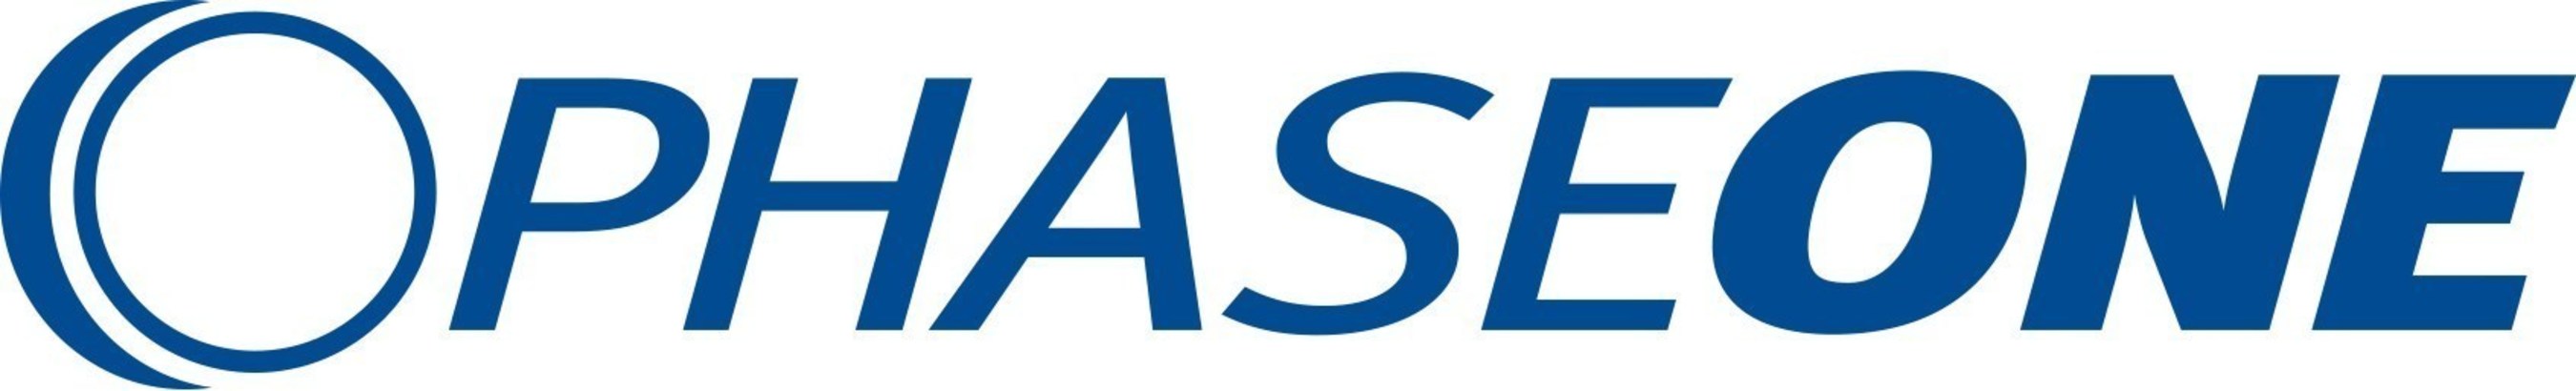 Phase One Logo